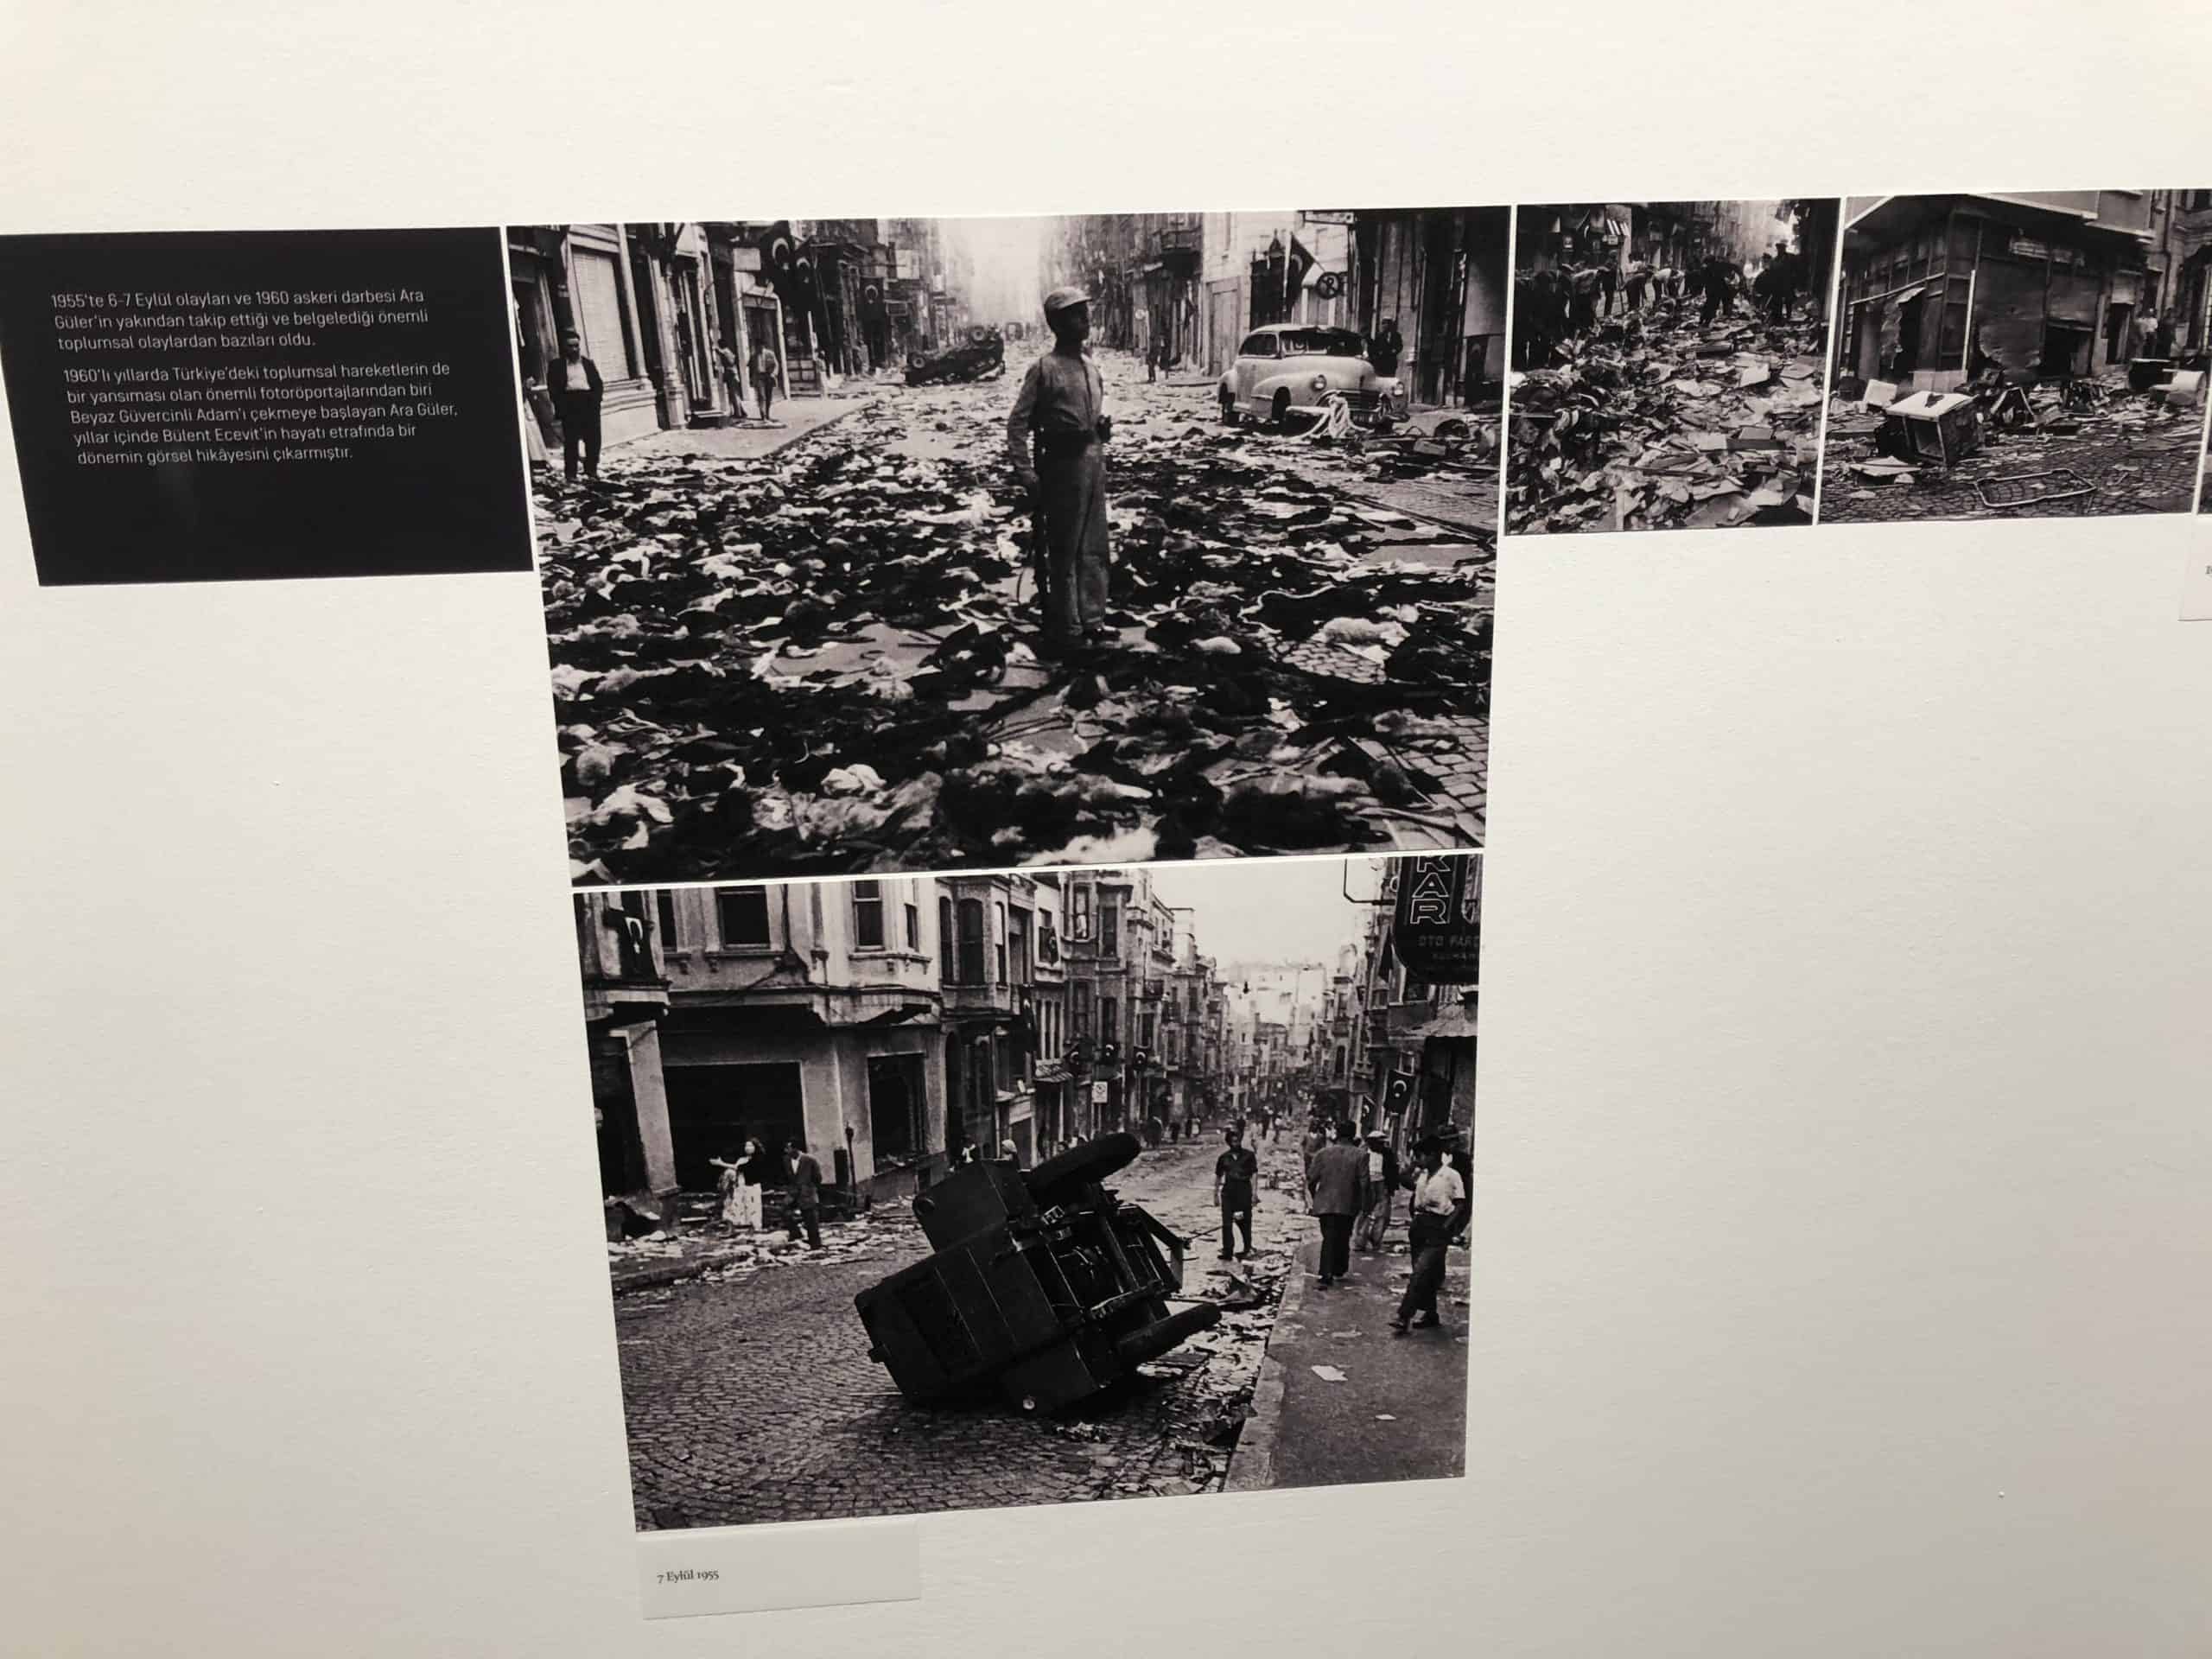 Photos of the 1955 pogrom at the Ara Güler Museum in Bomontiada in Şişli, Istanbul, Turkey